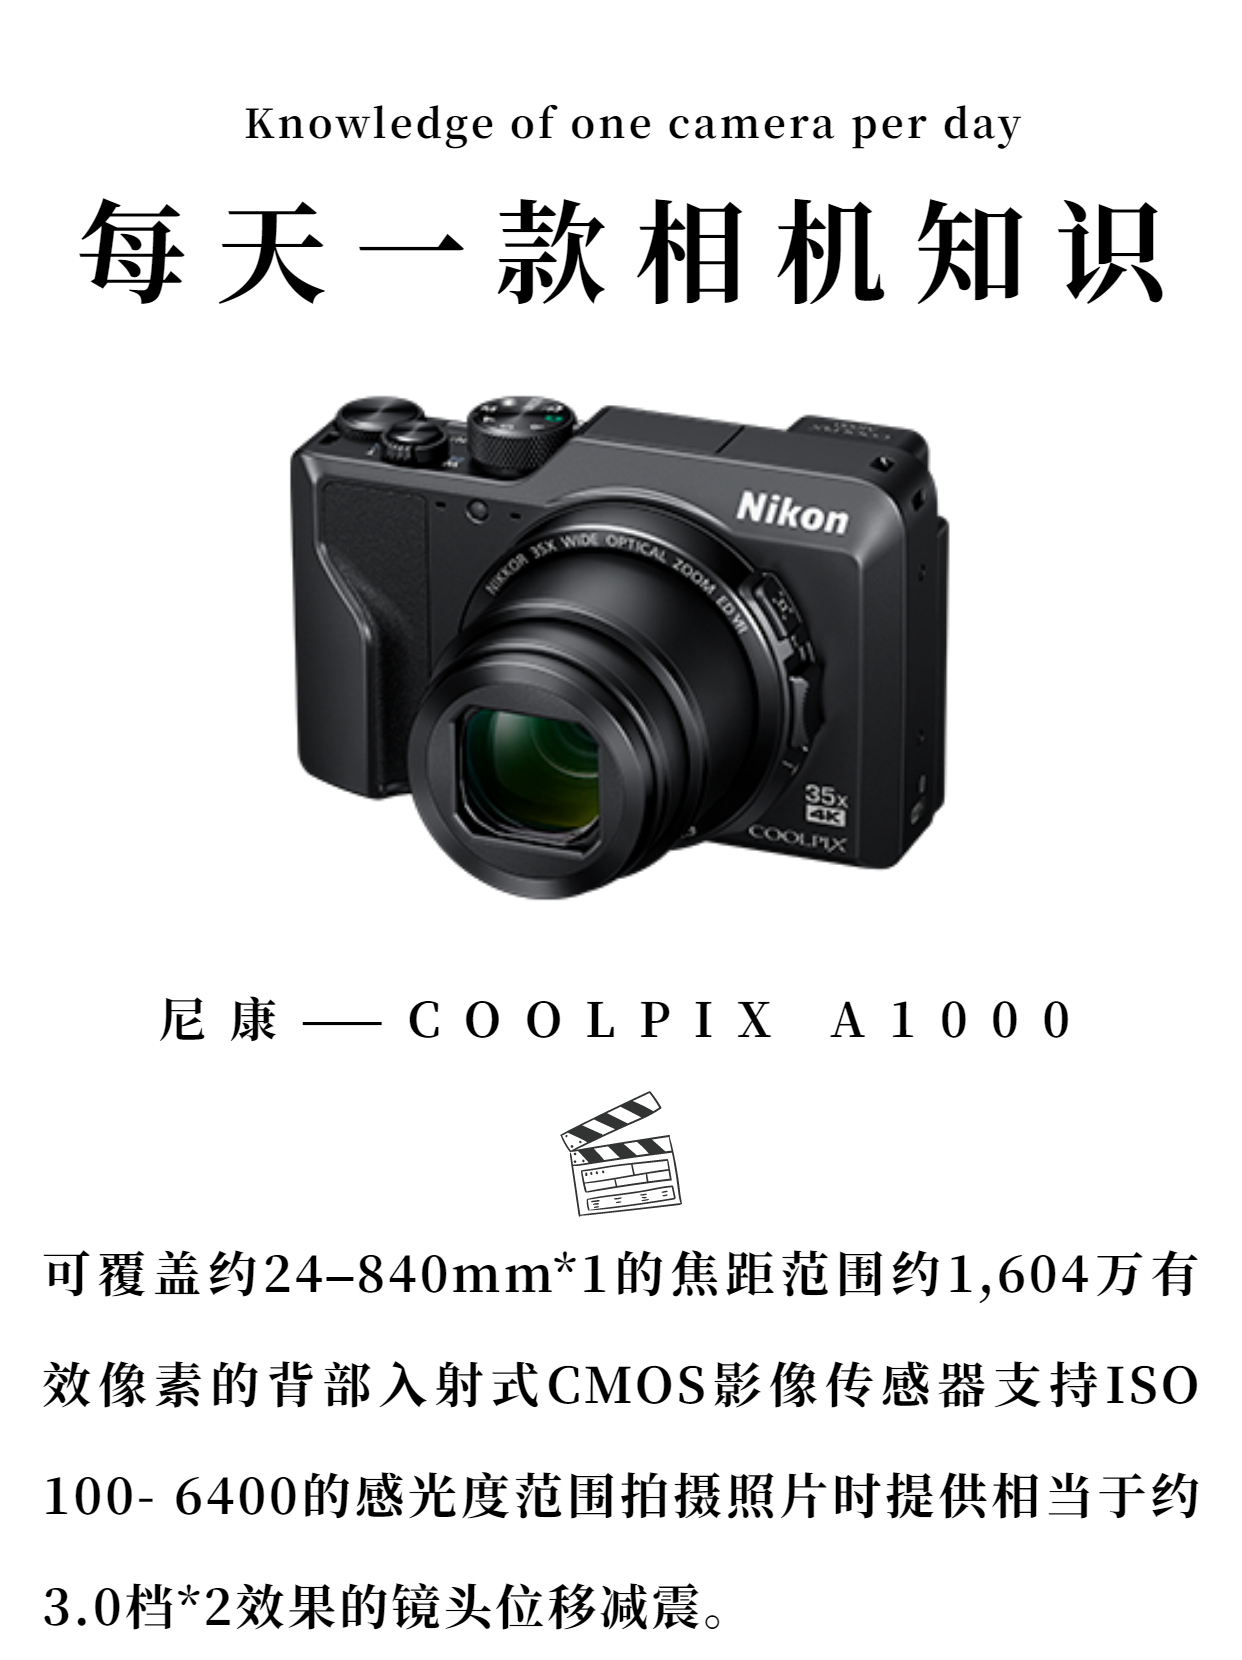 每天一款相机知识——尼康-coolpix A1000